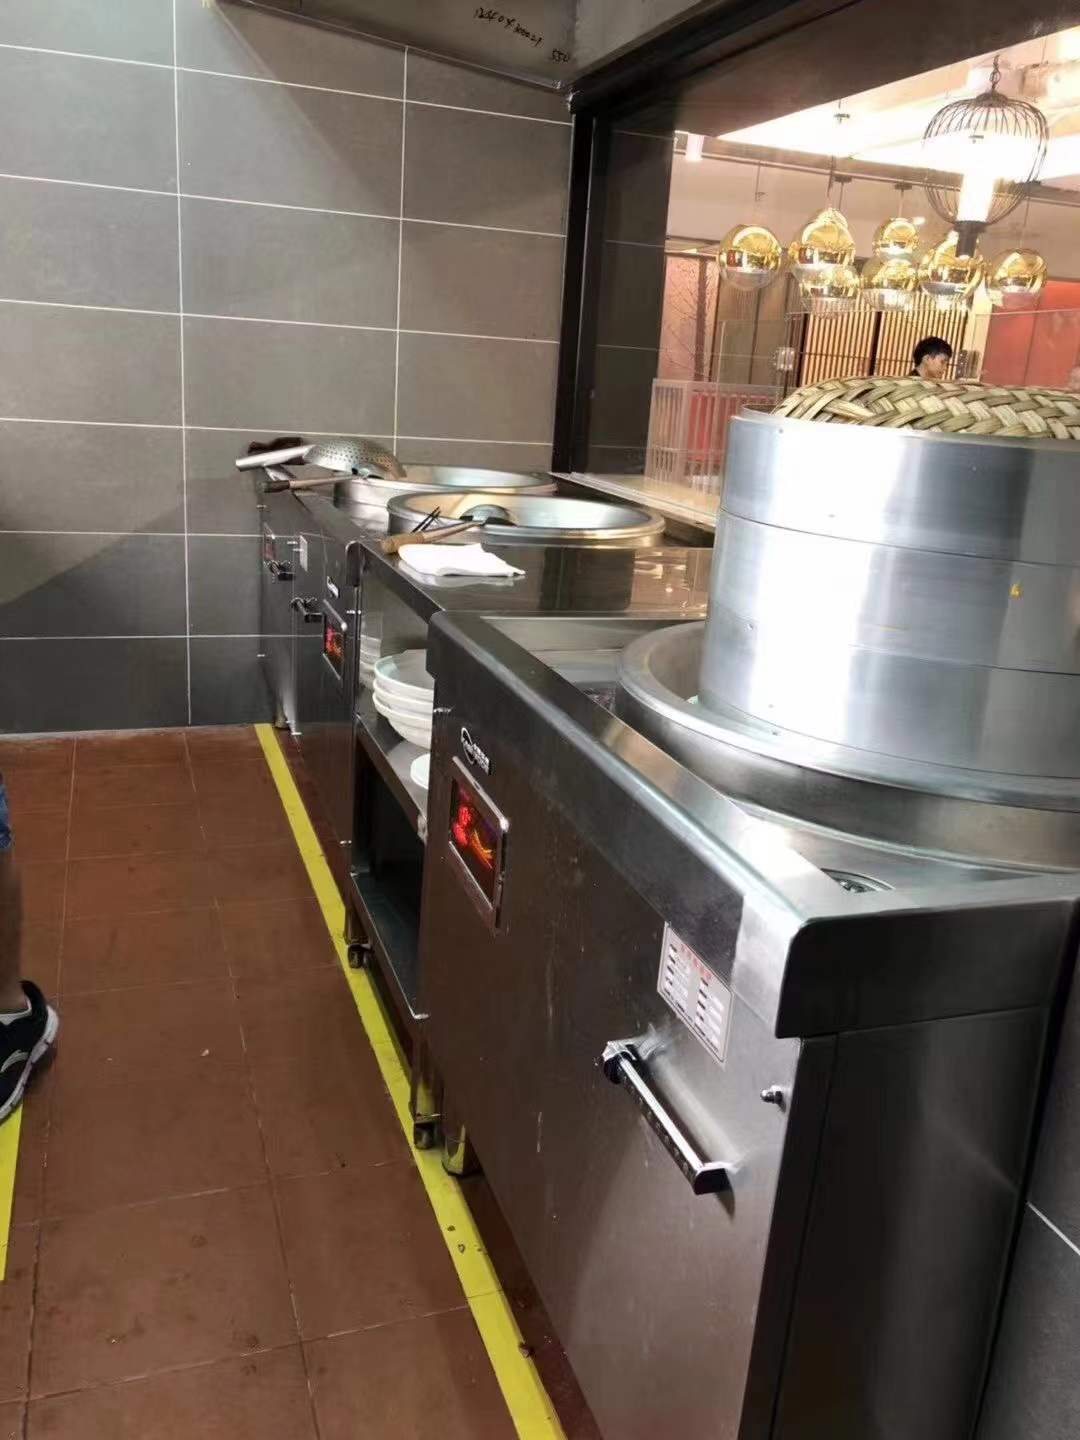 300平方食堂厨房设备工程怎么配置切菜台、水池以及炉具灶具